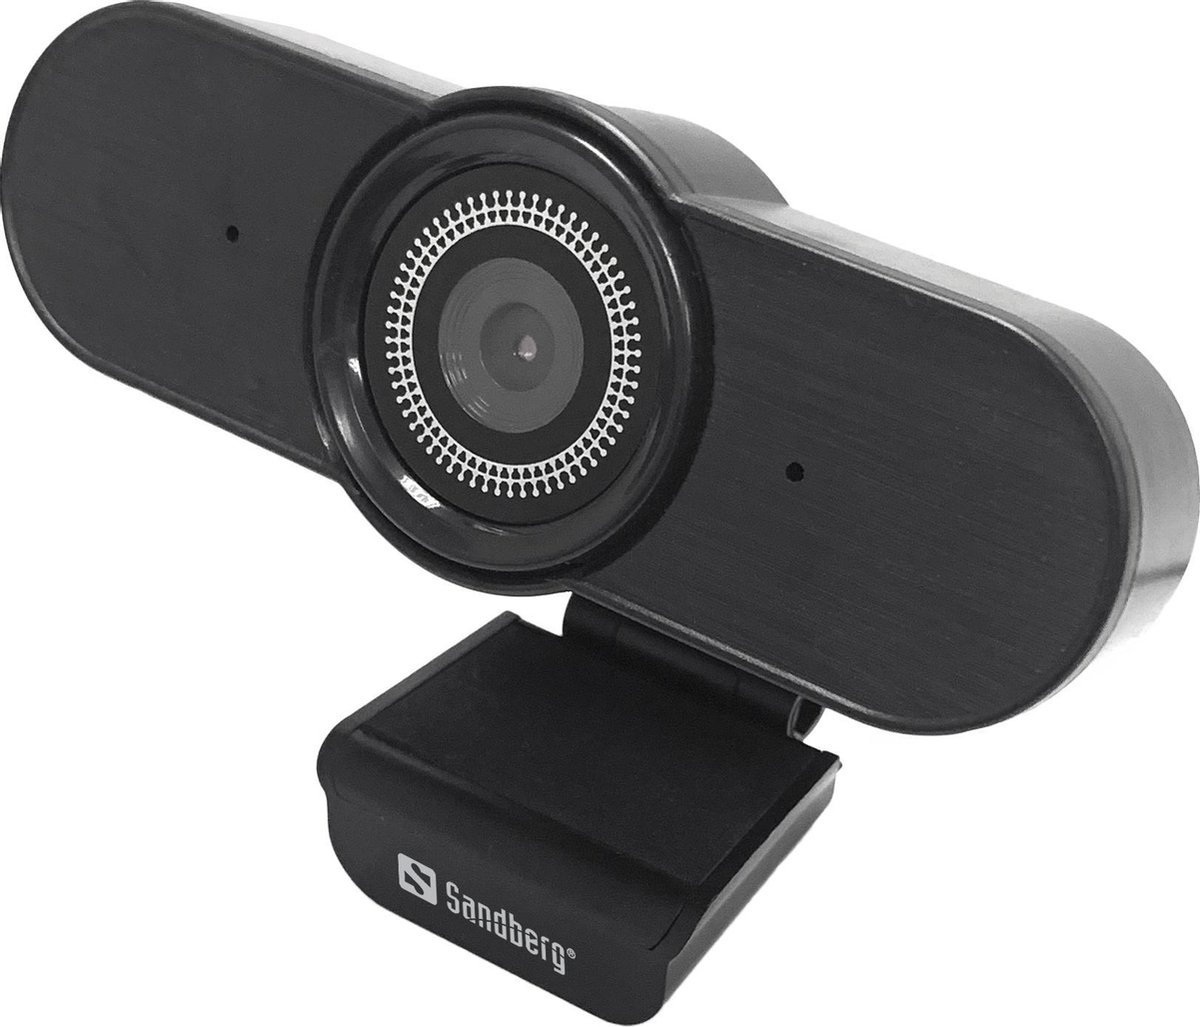 Sandberg 134-20 webcam 1920 x 1080 Pixels USB 2.0 Zwart